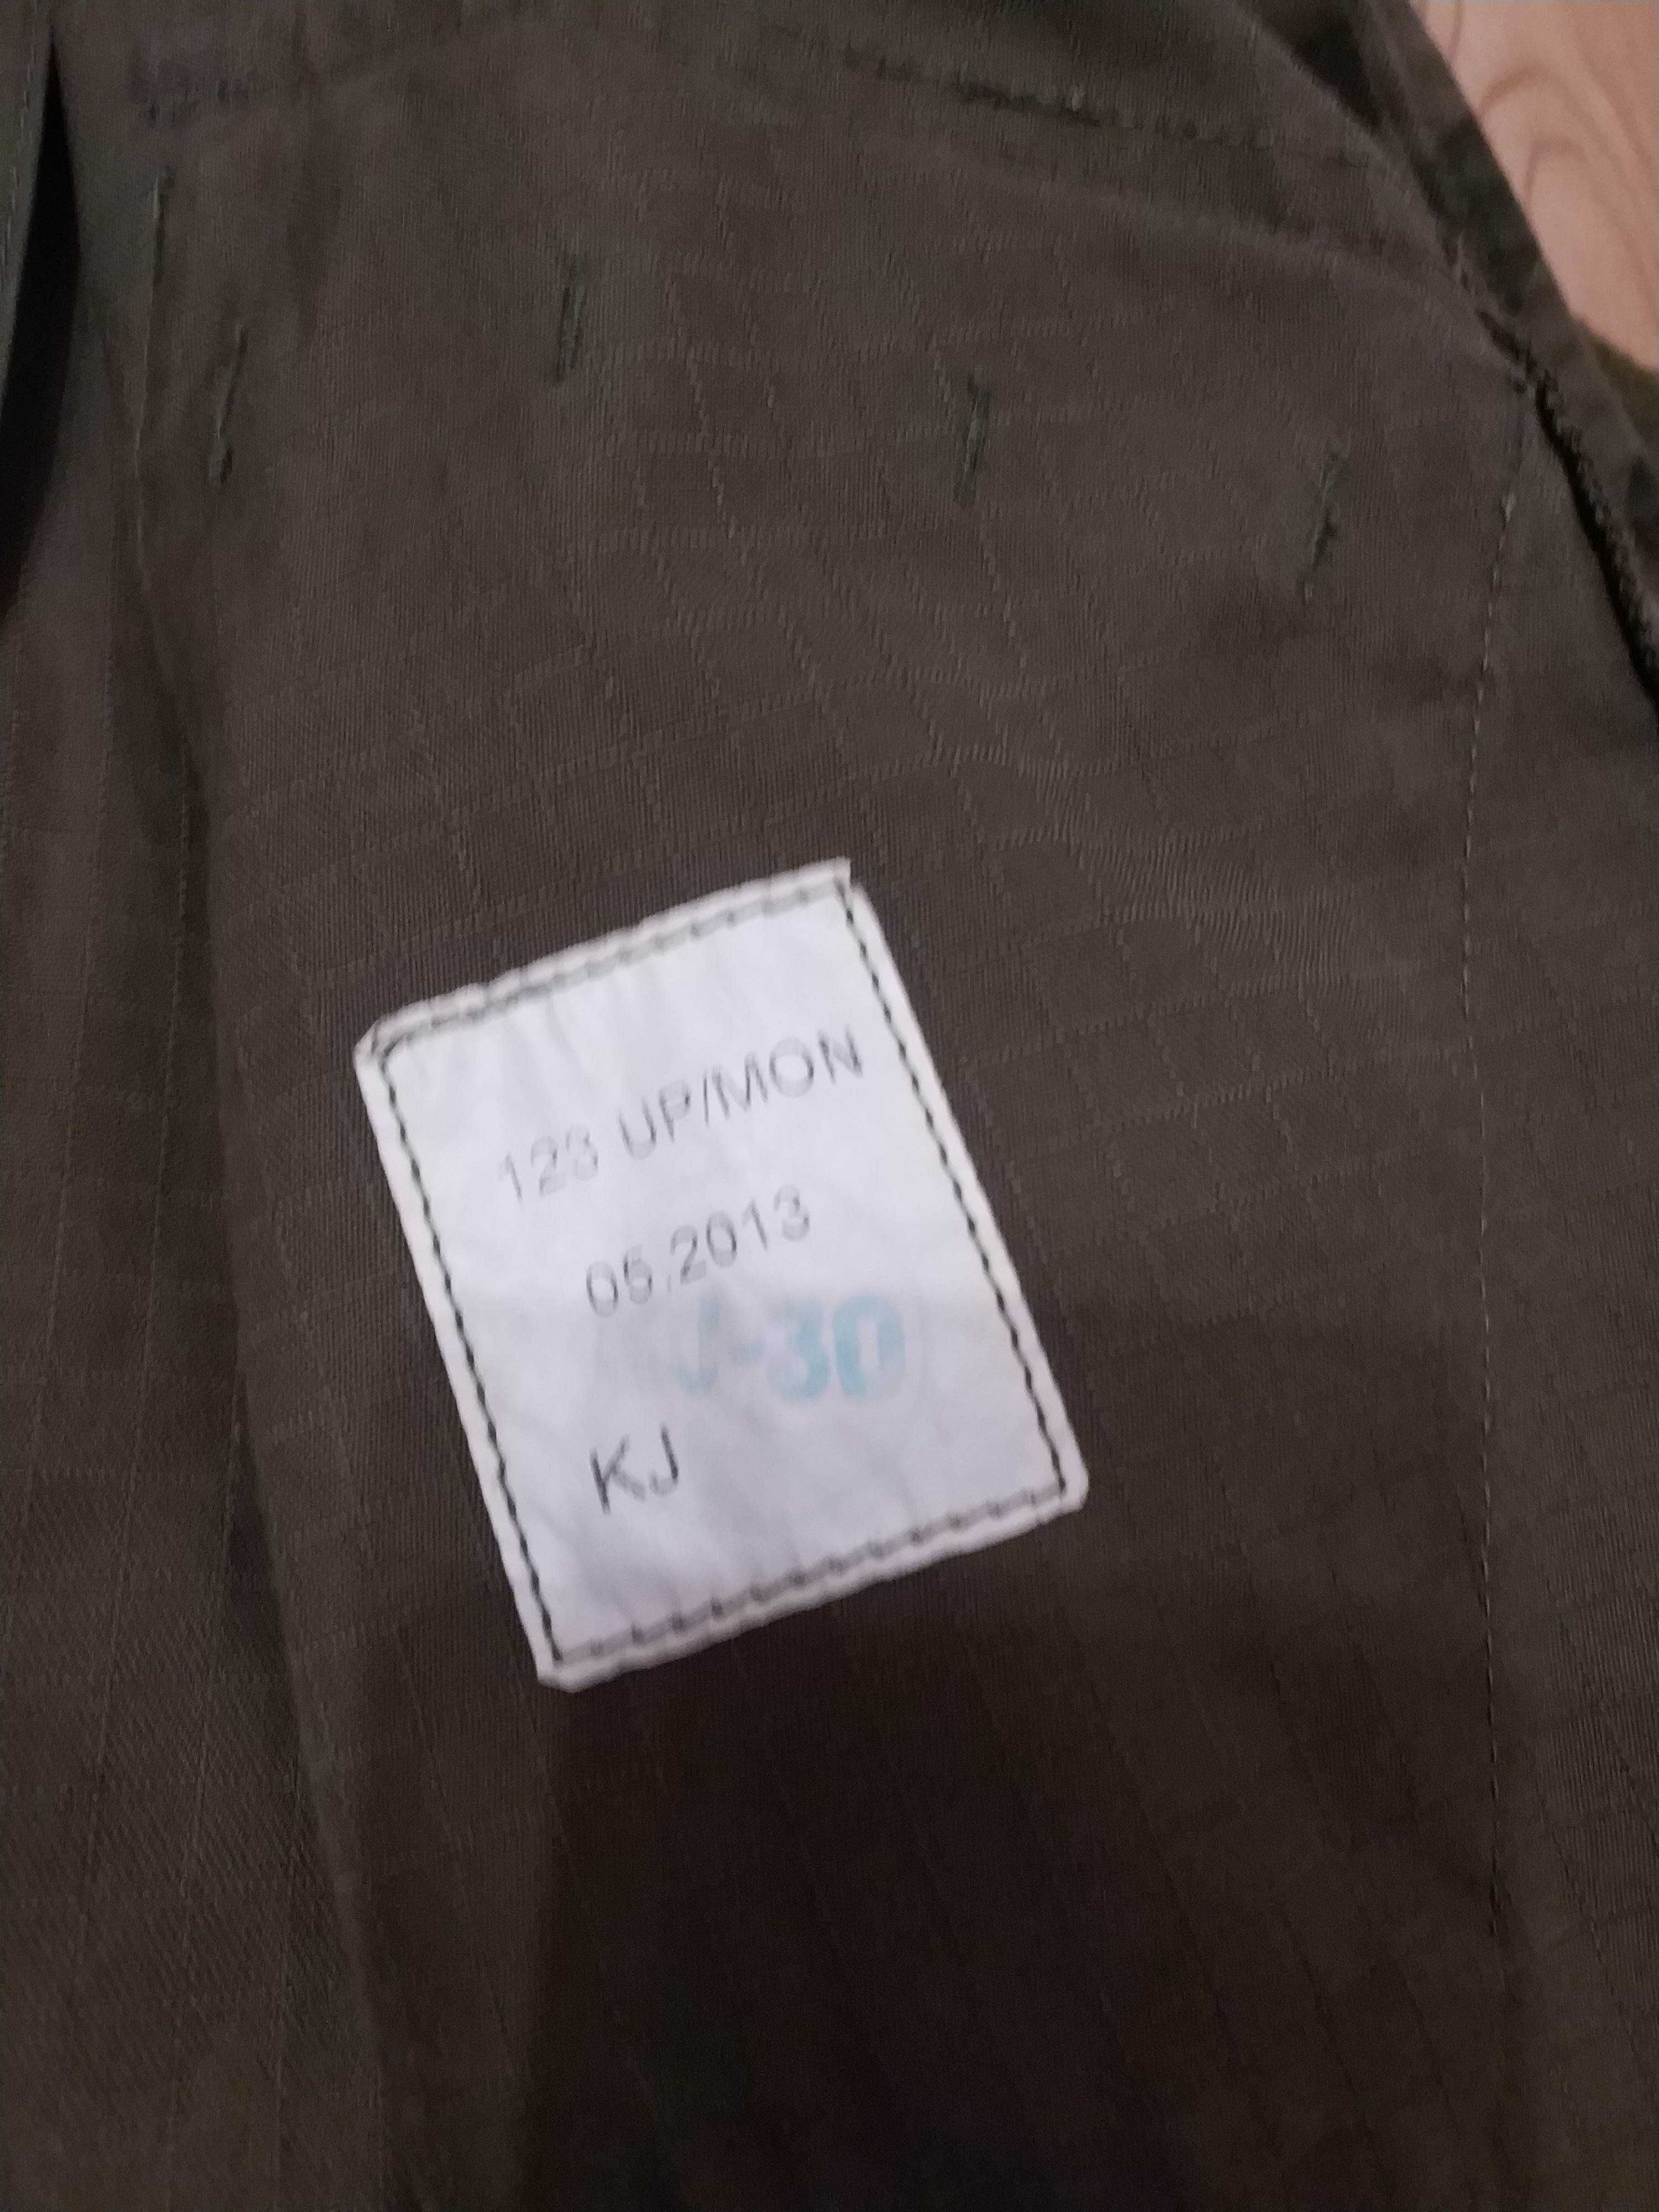 Mundur polowy wzór 123 UP/MON rozmiar M/R 2013 bluza koszula wojskowa